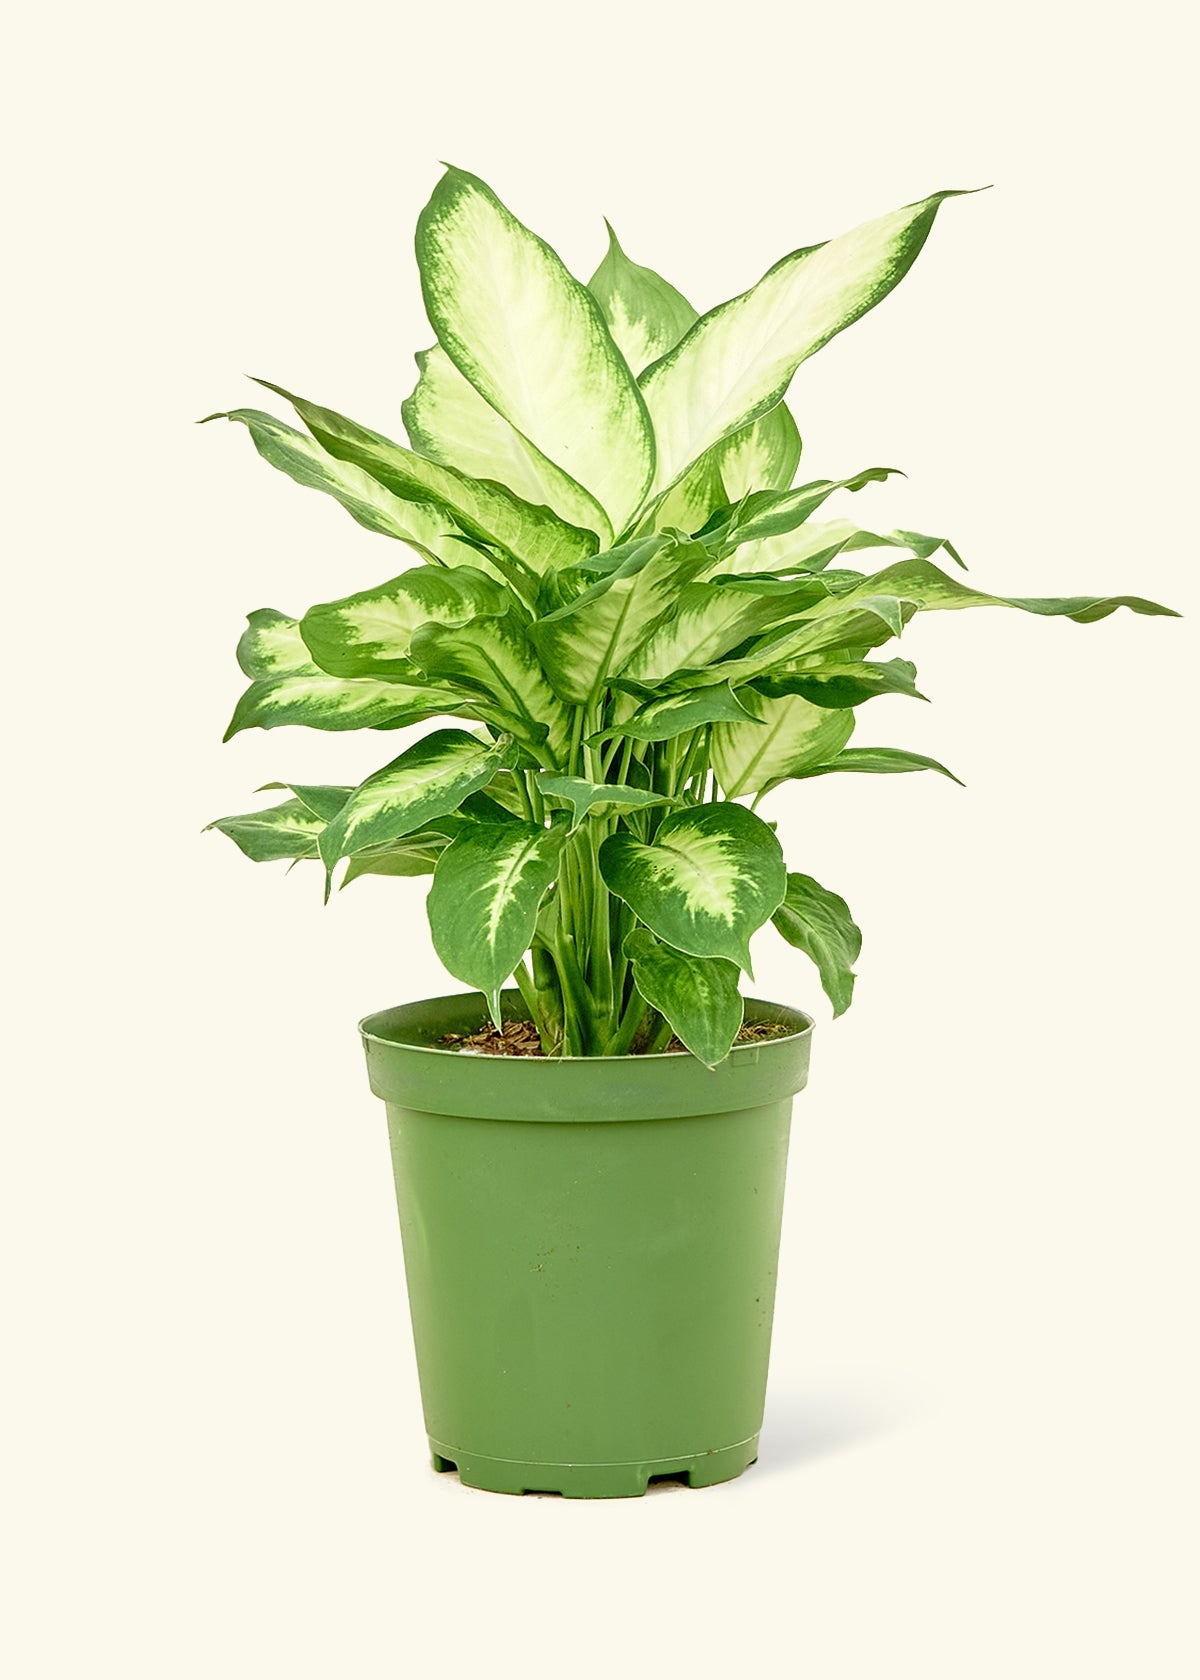 Medium Dieffenbachia 'Camille' (Dieffenbachia 'Camille') in grow pot